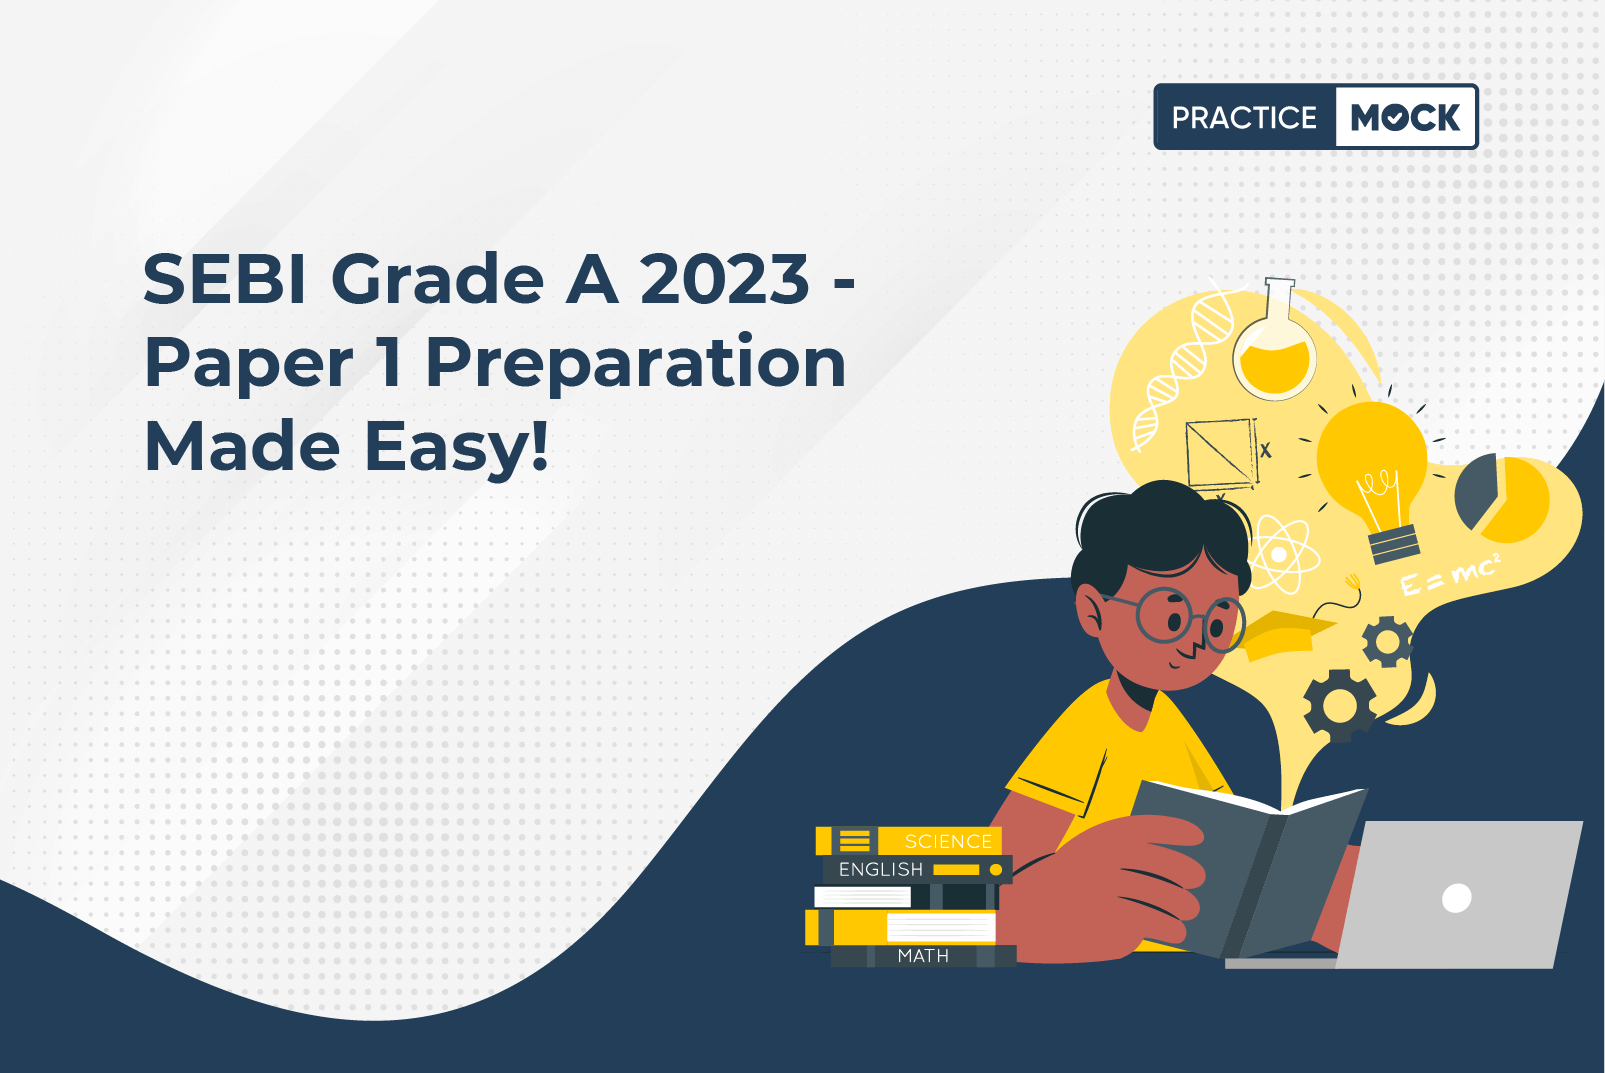 SEBI Grade A 2022-How to Prepare for Paper 1?